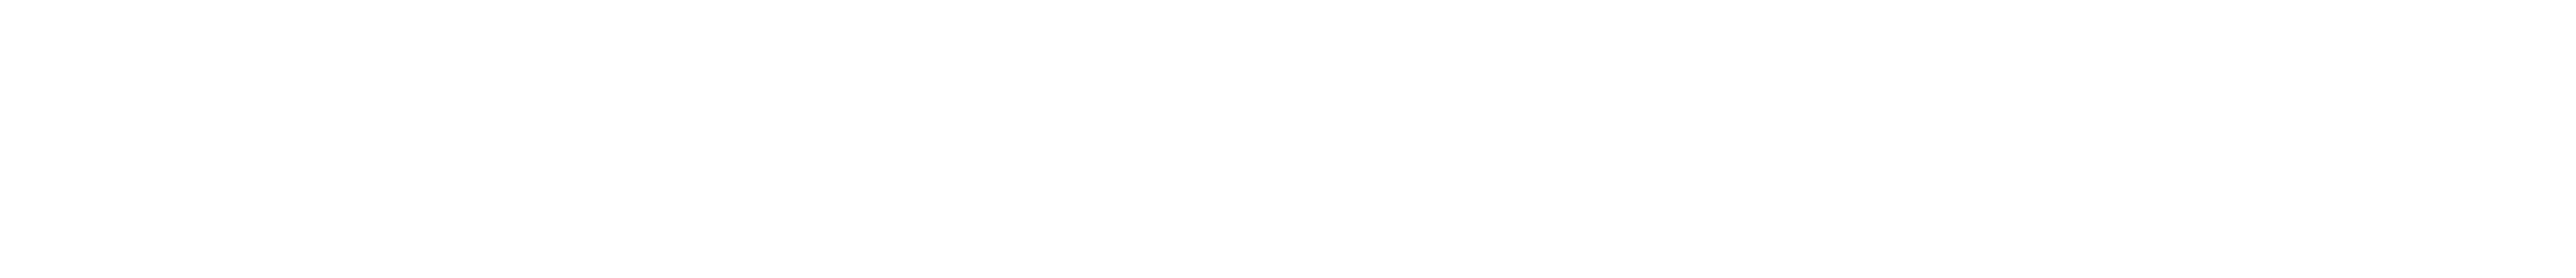 iloud_precision_logo.png